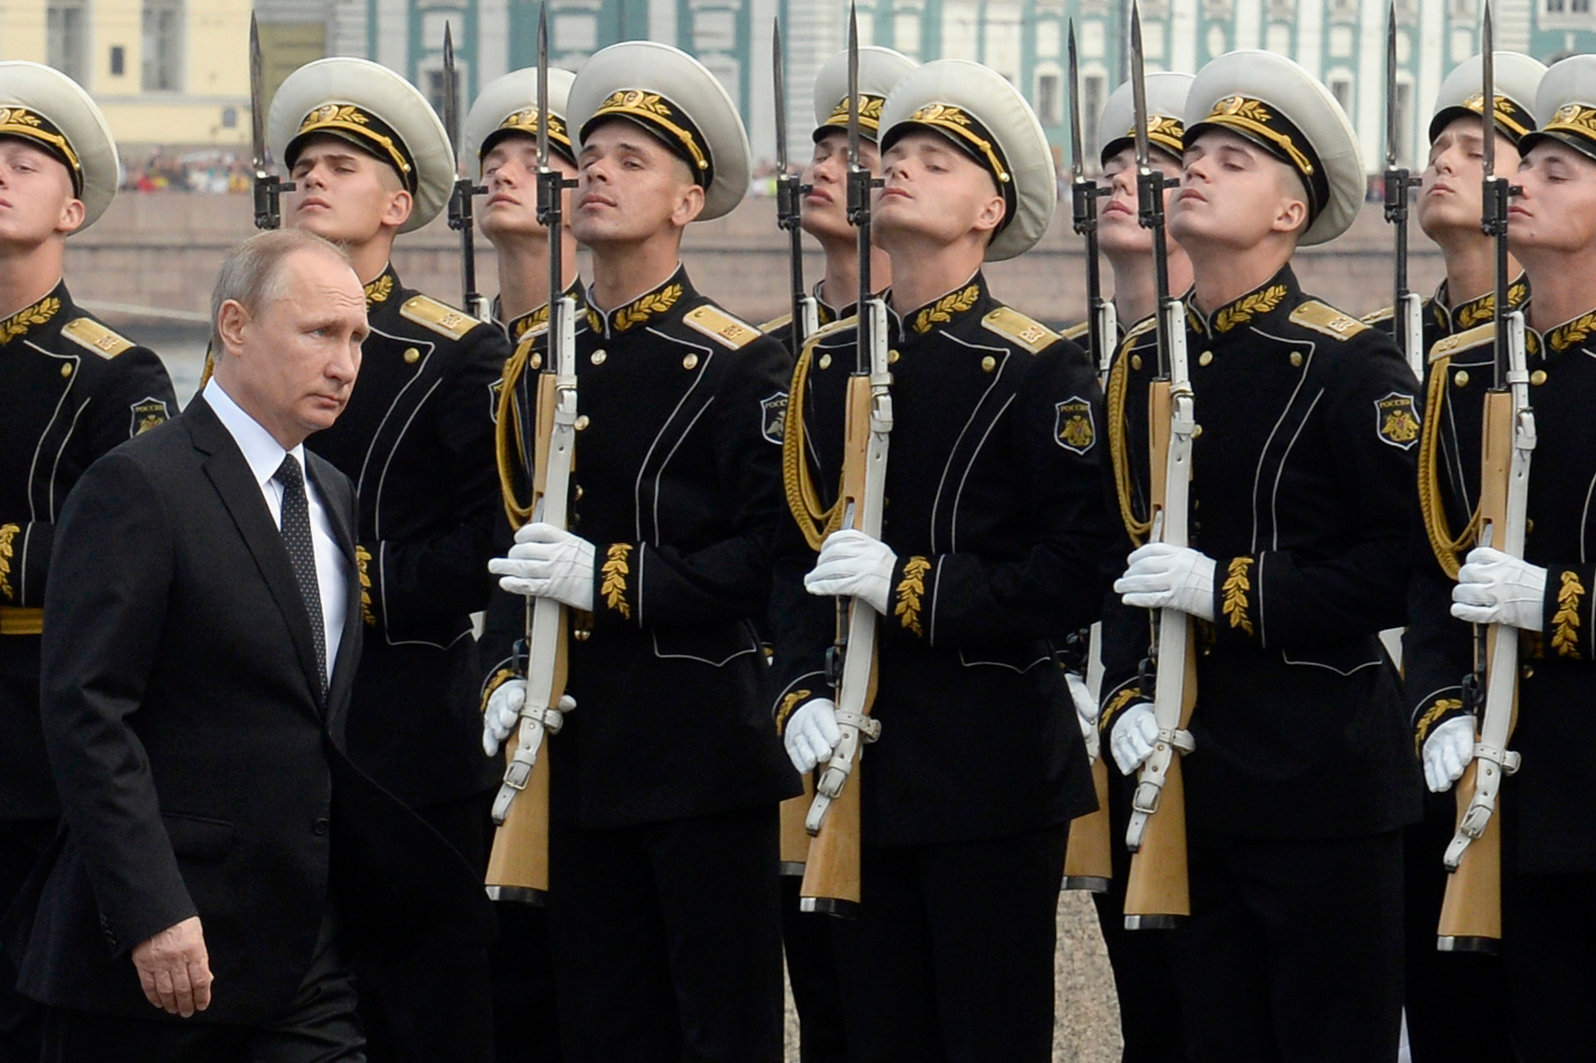 Oι ΝΥ Τimes κατηγορούν τον Β.Πούτιν επειδή… αντέδρασε! – «Κλιμακώνει την ένταση και απαντάει στις κυρώσεις μας»